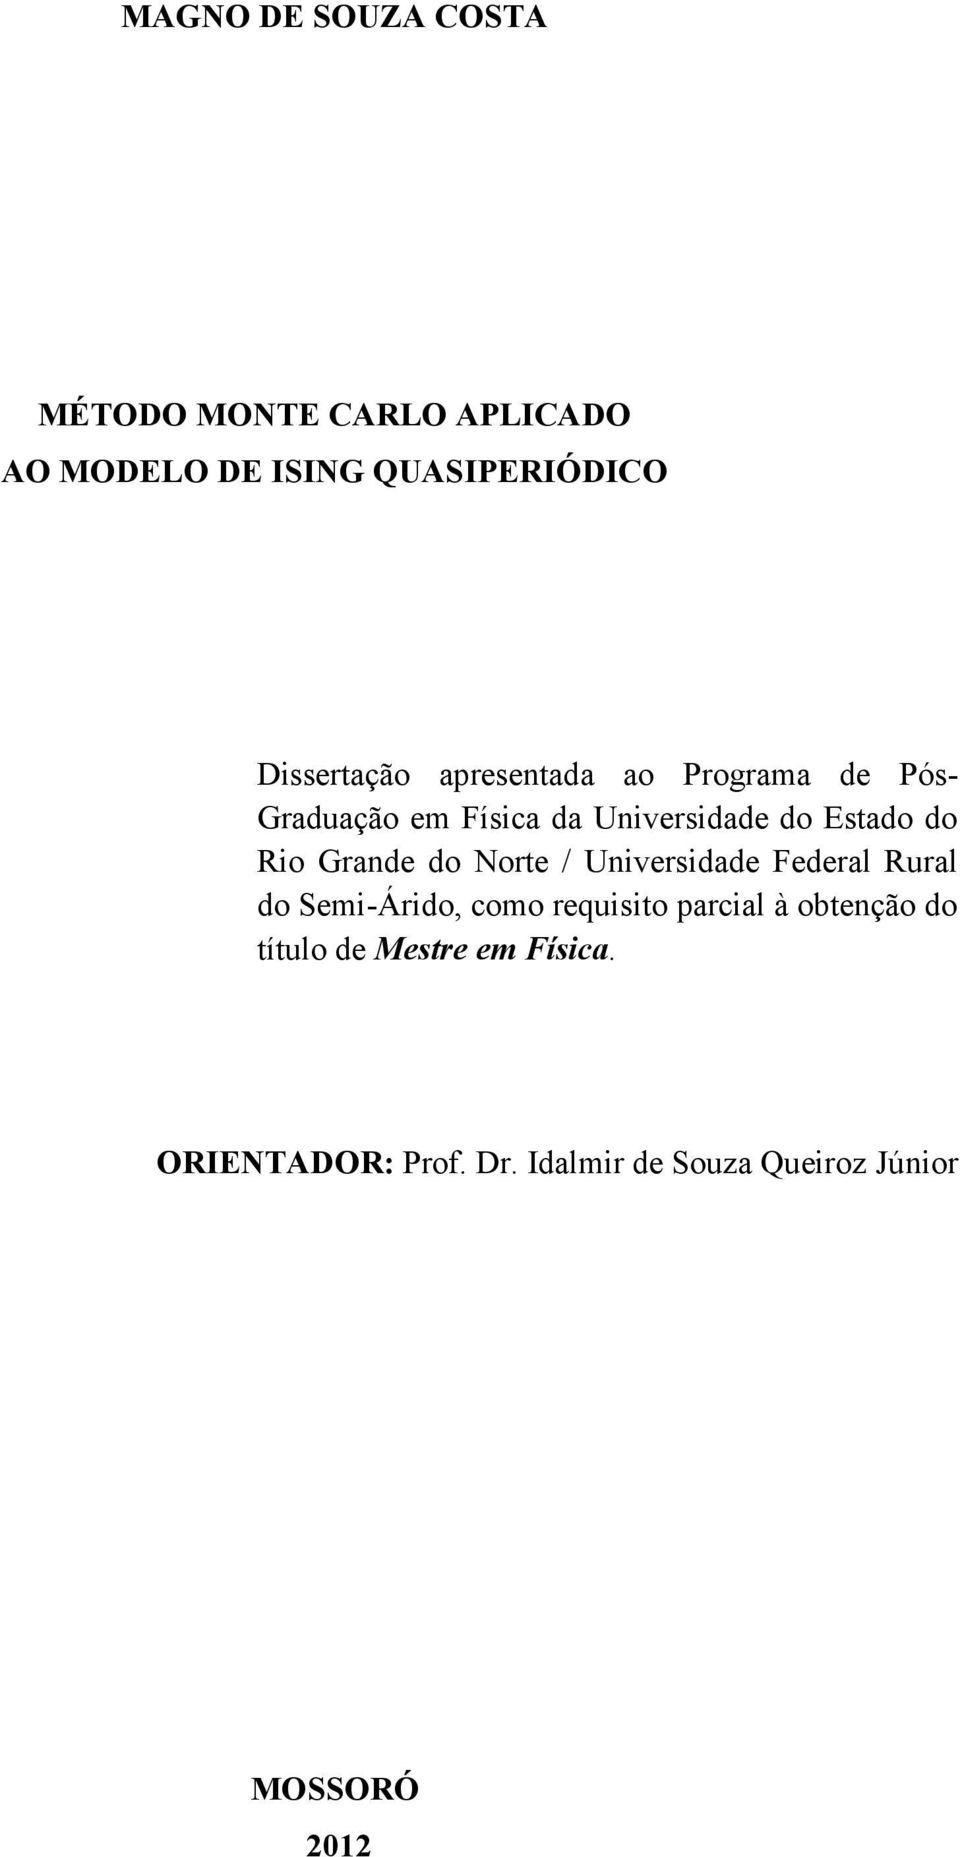 Rio Grande do Norte / Universidade Federal Rural do Semi-Árido, como requisito parcial à